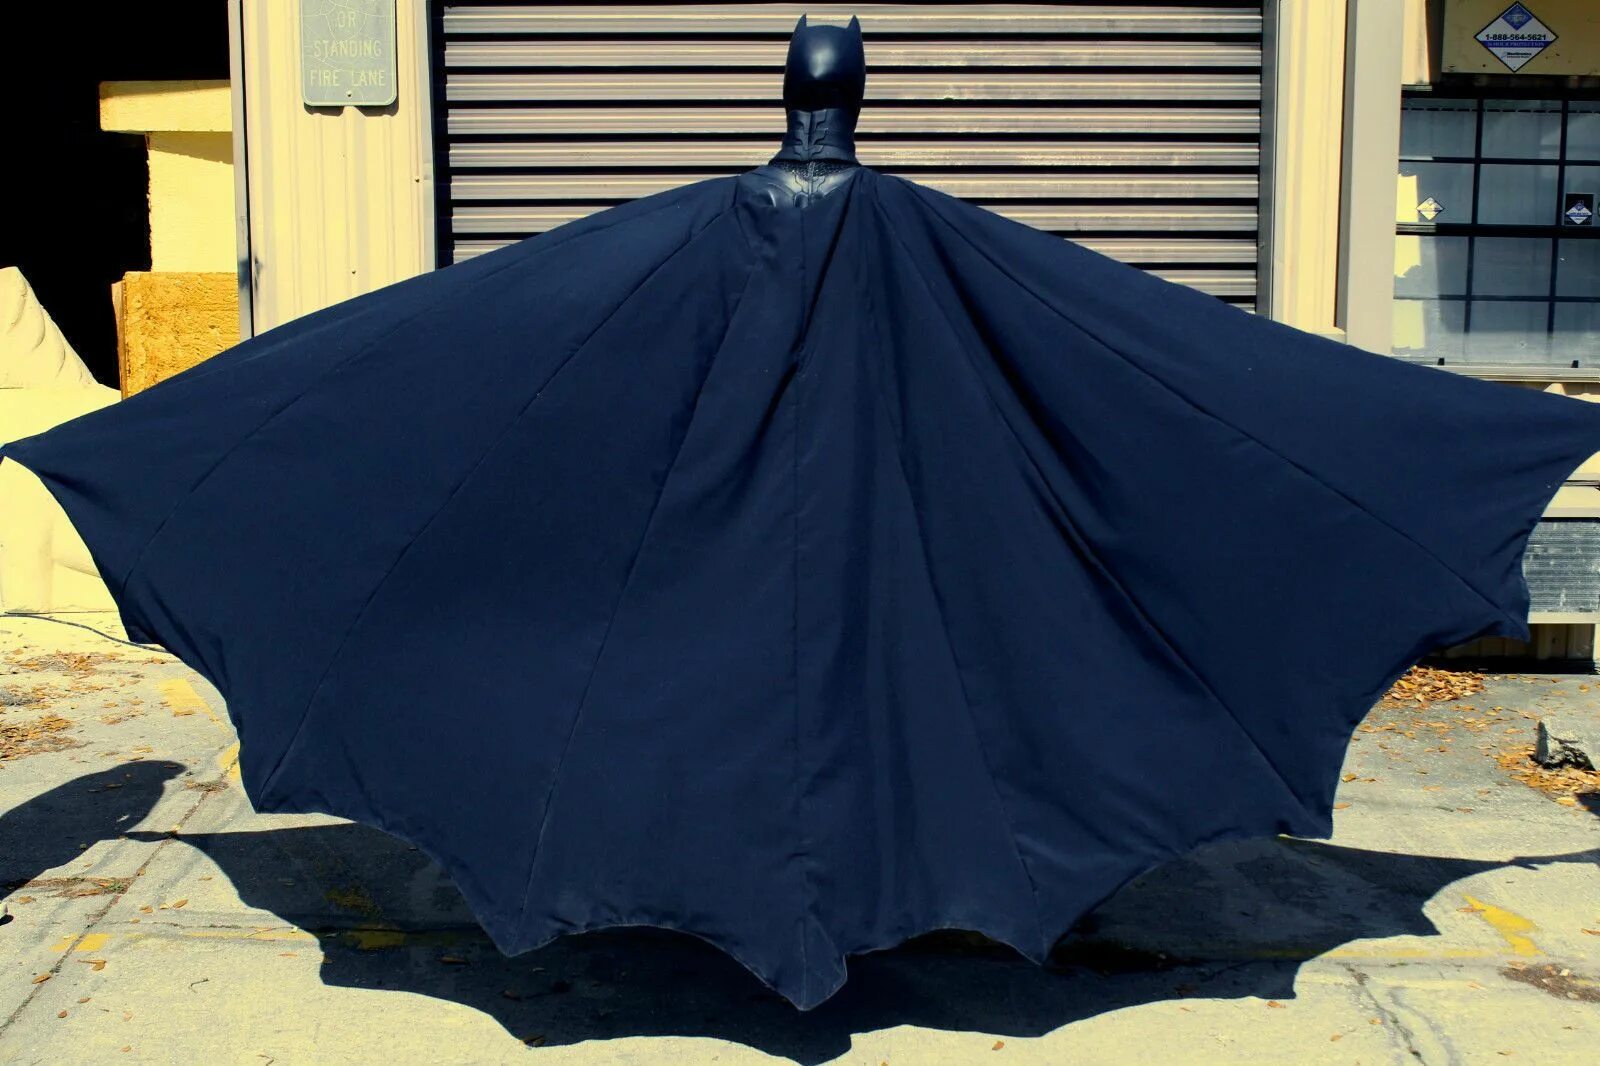 Плащ Бэтмена. Мантия Бэтмена. Плащ Бэтмена со спины. Человек в костюме летучей мыши. Batman cape